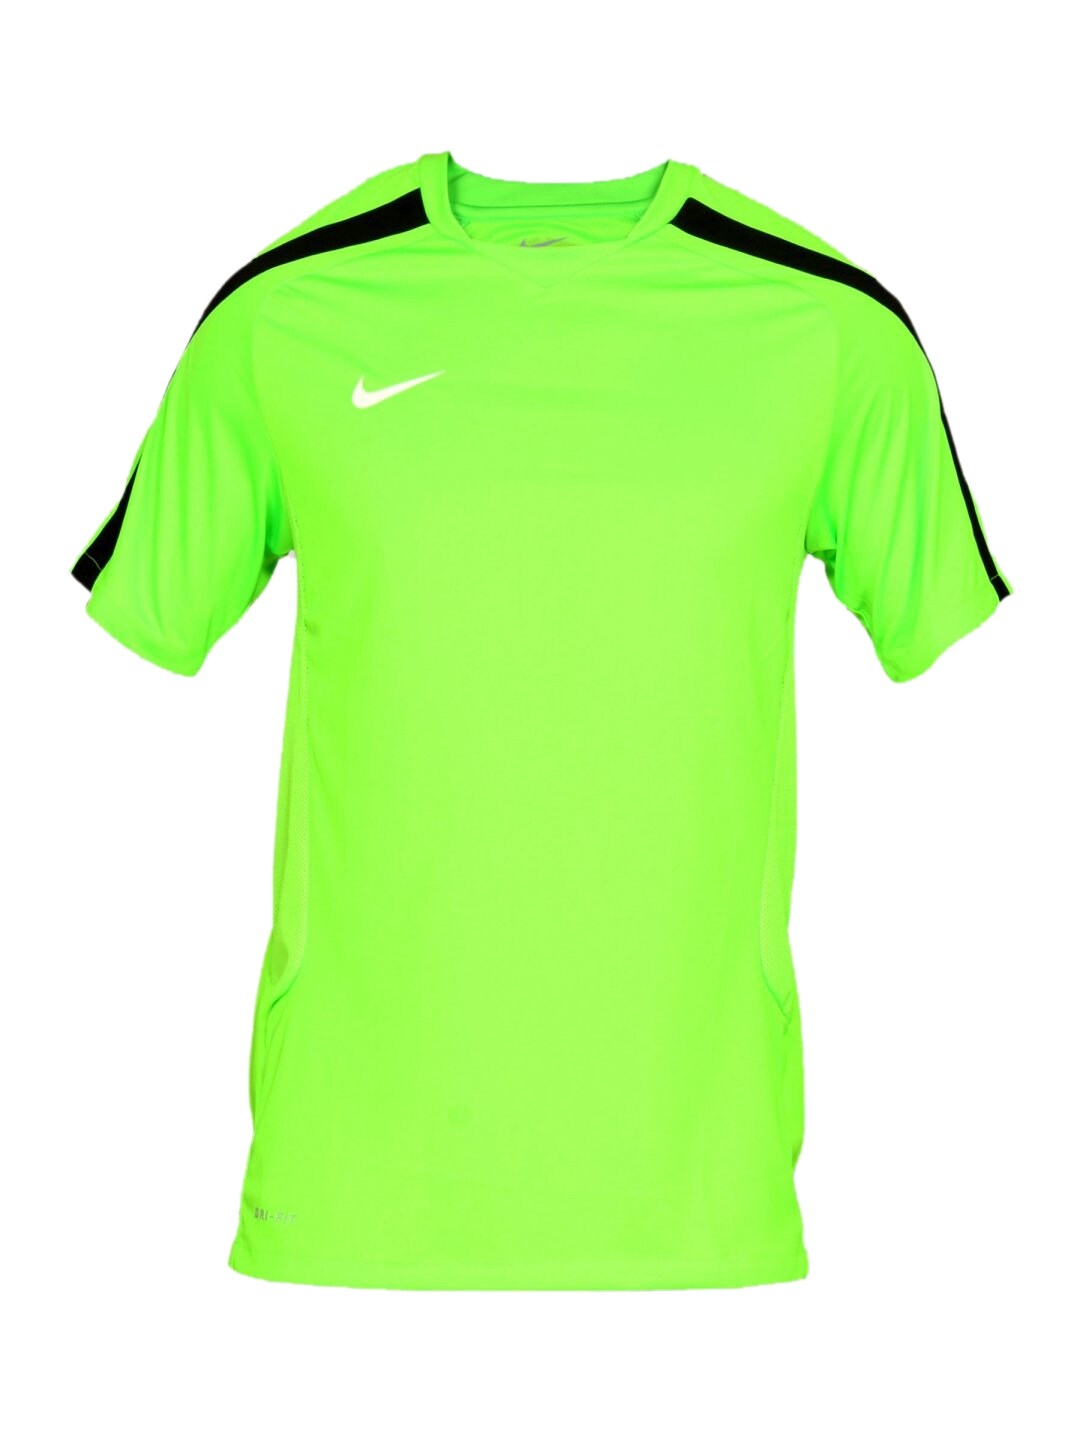 Nike Men's Training Green T-shirt